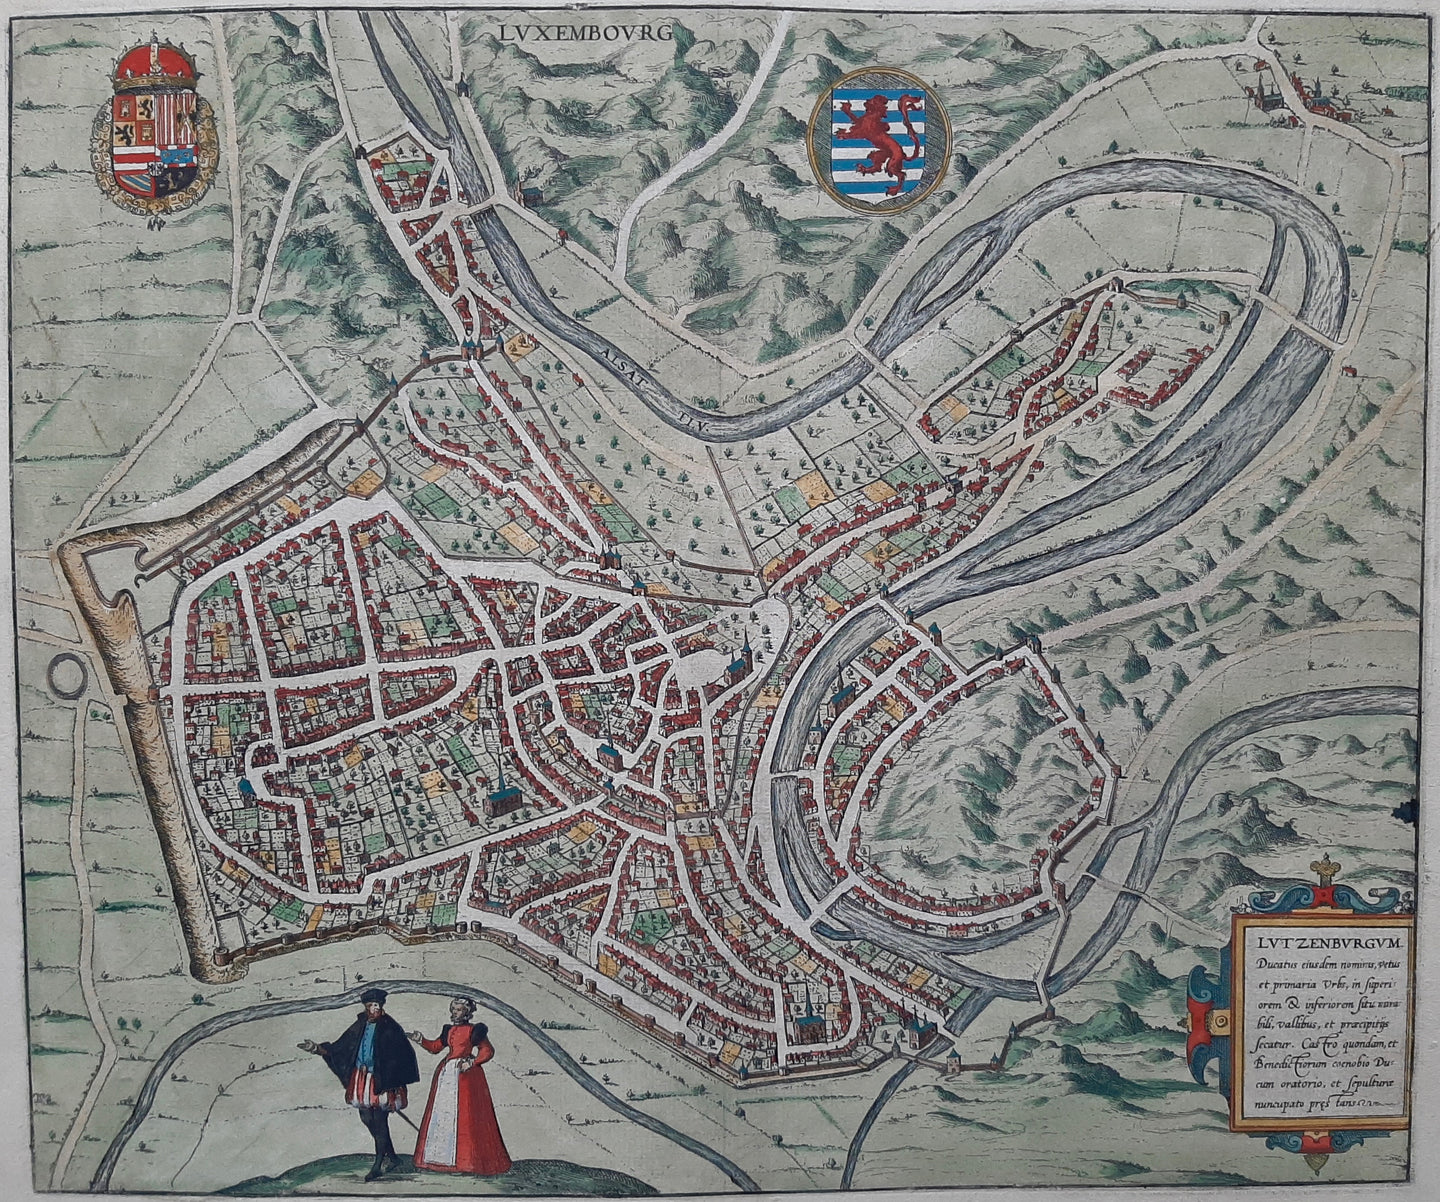 Luxemburg Stadsplattegrond in vogelvluchtperspectief - G Braun & F Hogenberg - 1588